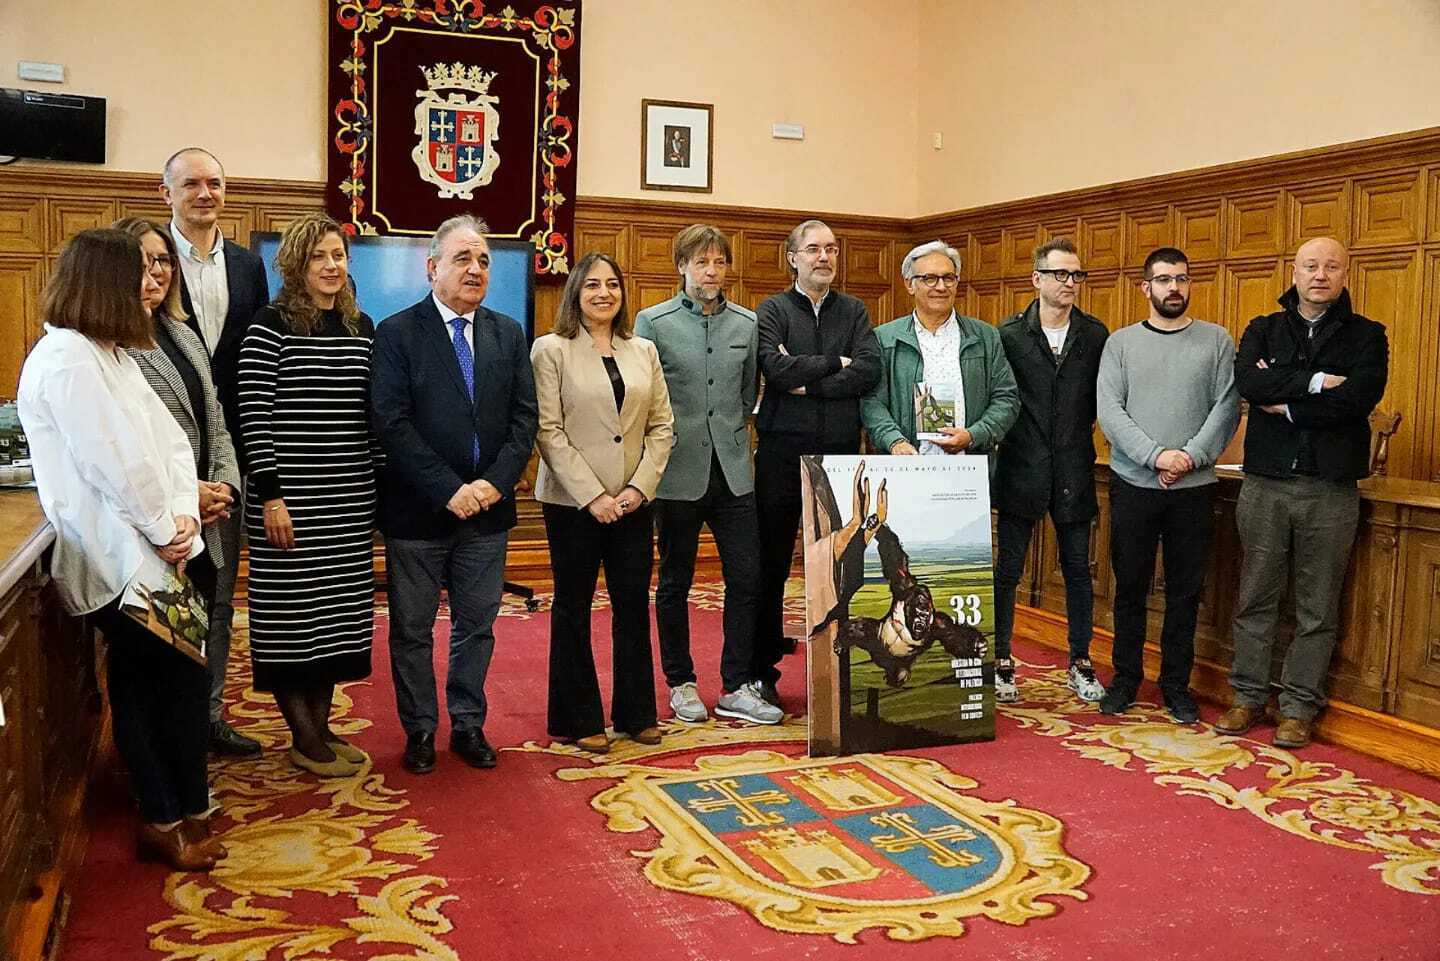 •	La MCIP recalará por vez primera en el Museo de Palencia, el OMY, el Centro Cultural Provincial, la residencia de San Telmo y el Centro de Artes Escénicas Jorge Manrique de Paredes de Nava.